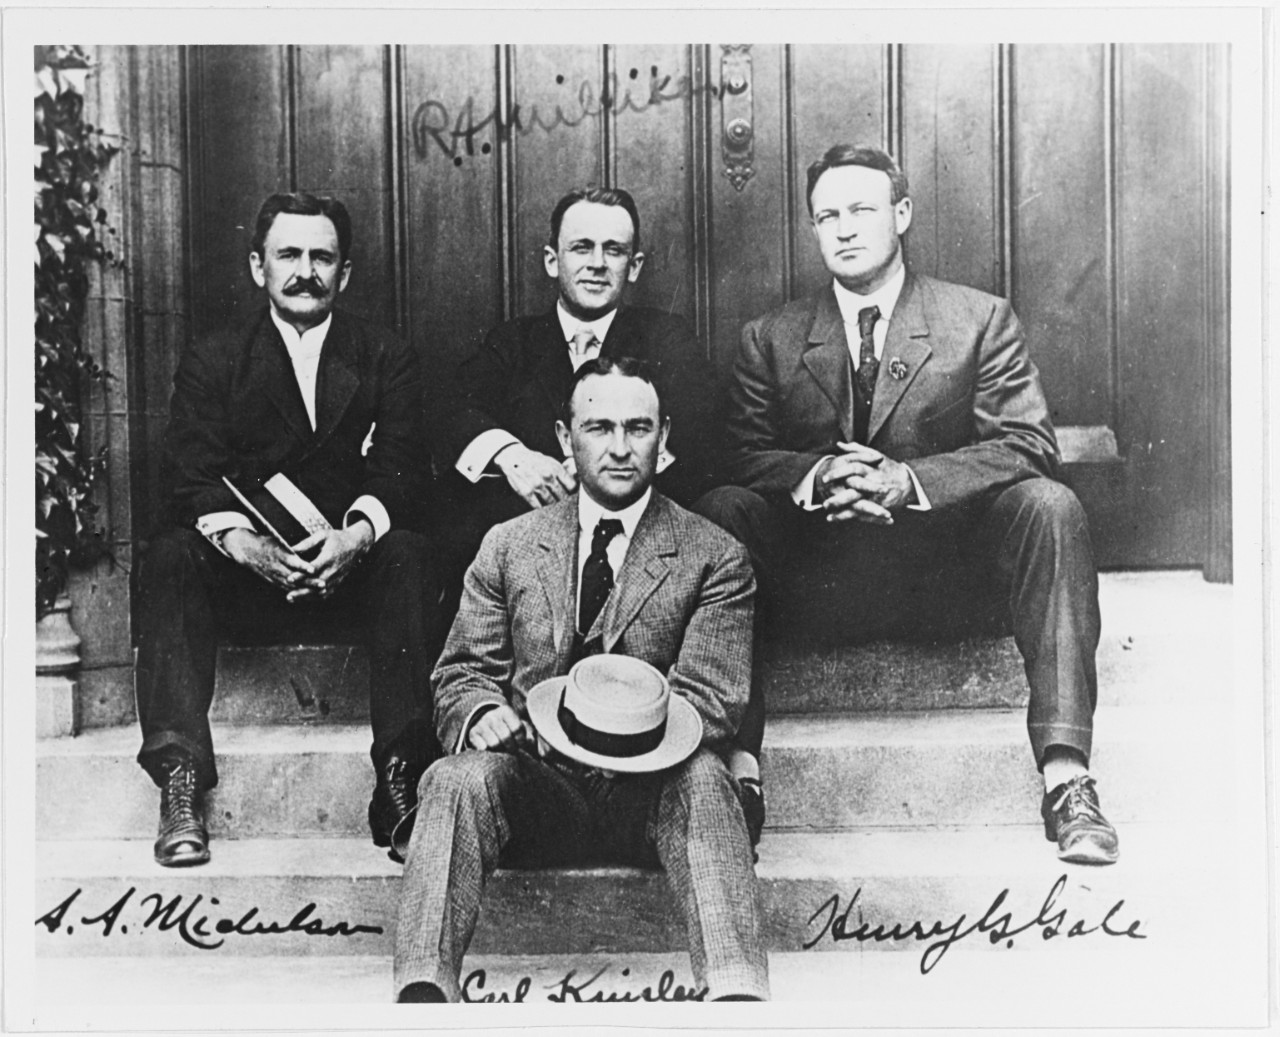 Albert A. Michelson, Robert A. Millikan, Henry A. Gordon, and Carl Kinsley